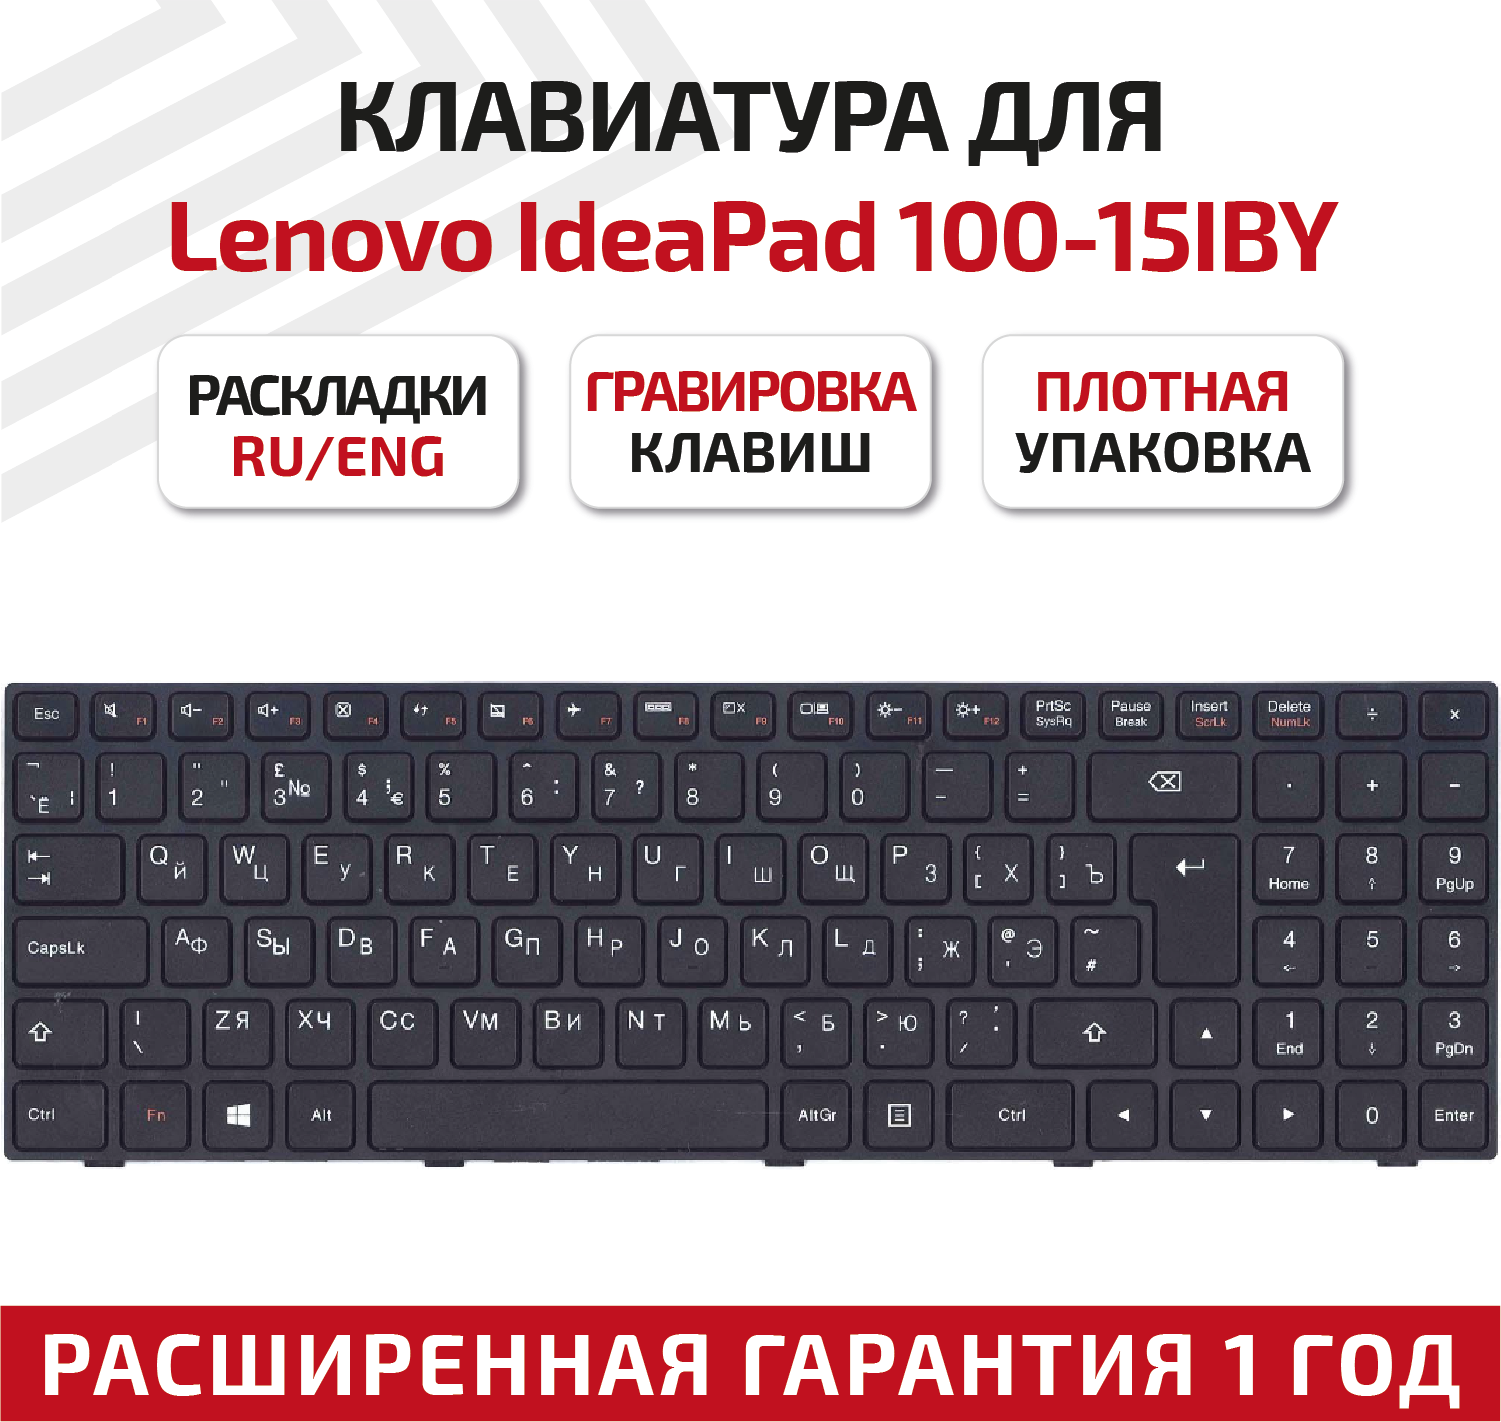 Клавиатура (keyboard) SN20J78609 для ноутбука Lenovo IdeaPad 100-15 100-15IBY 100-15IB B50-10 B5010 черная